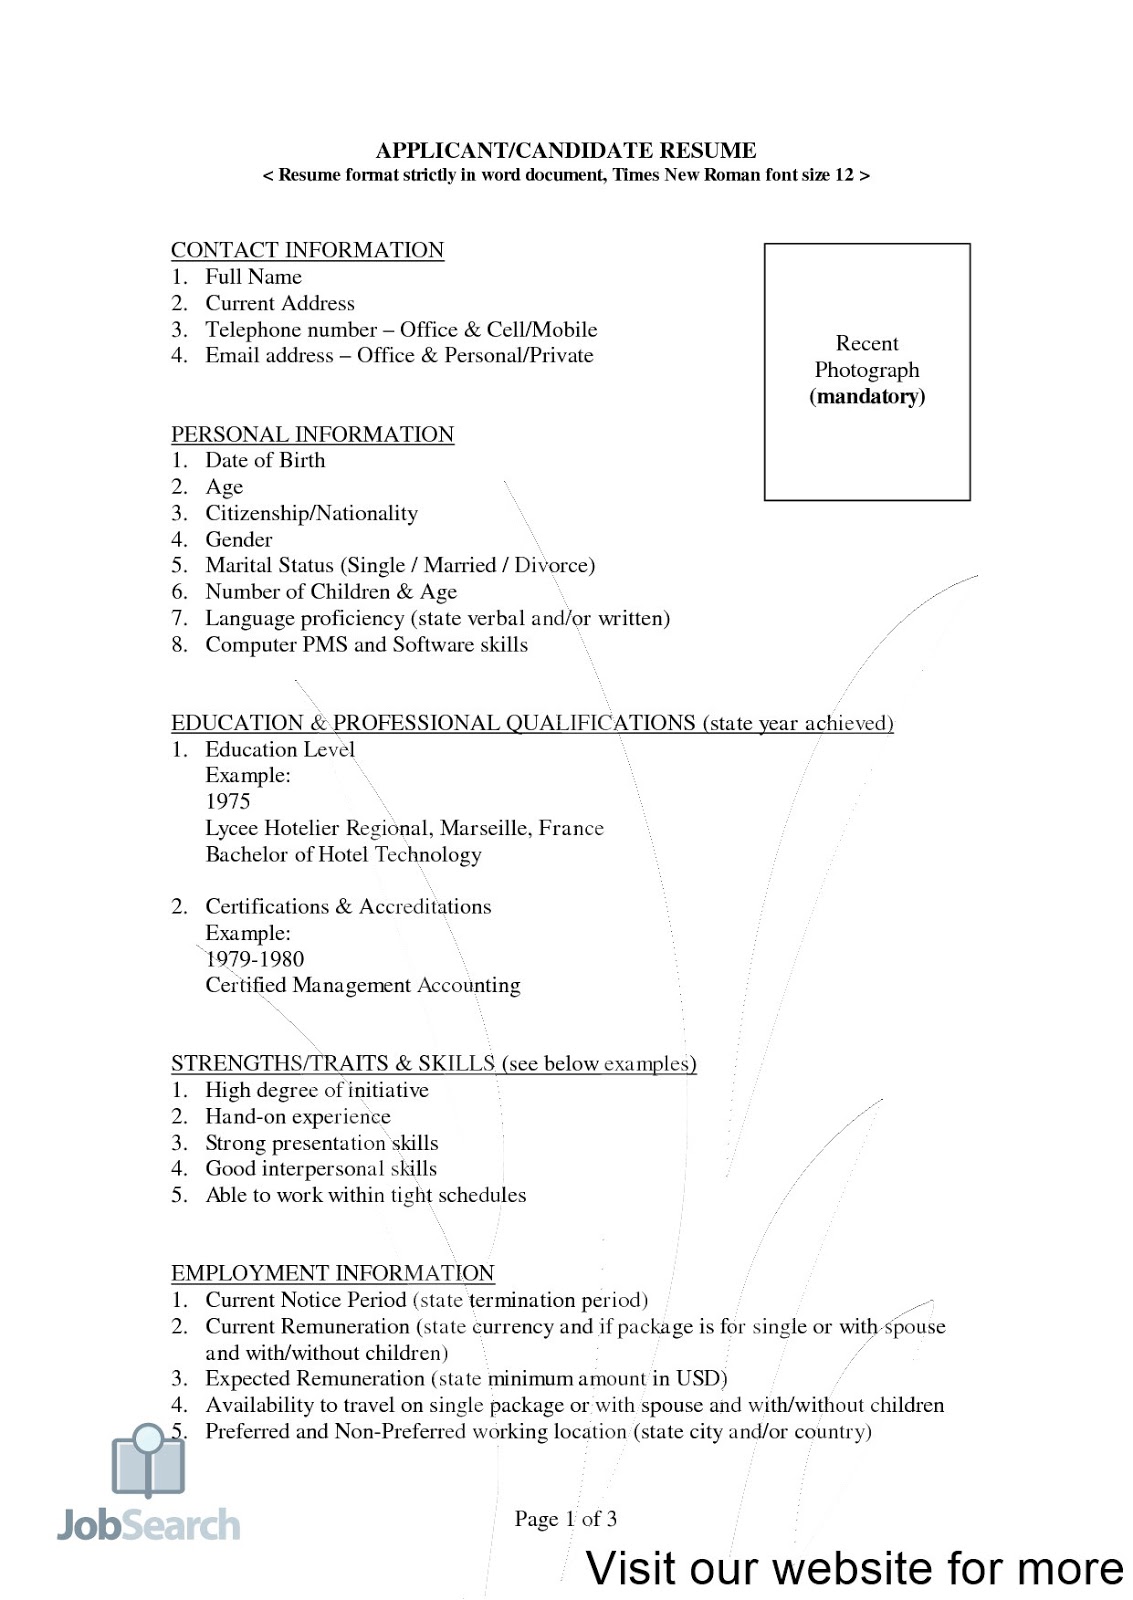 format my resume format my resume free format my resume for me how to format my resume in word what format should my resume be in my resume format